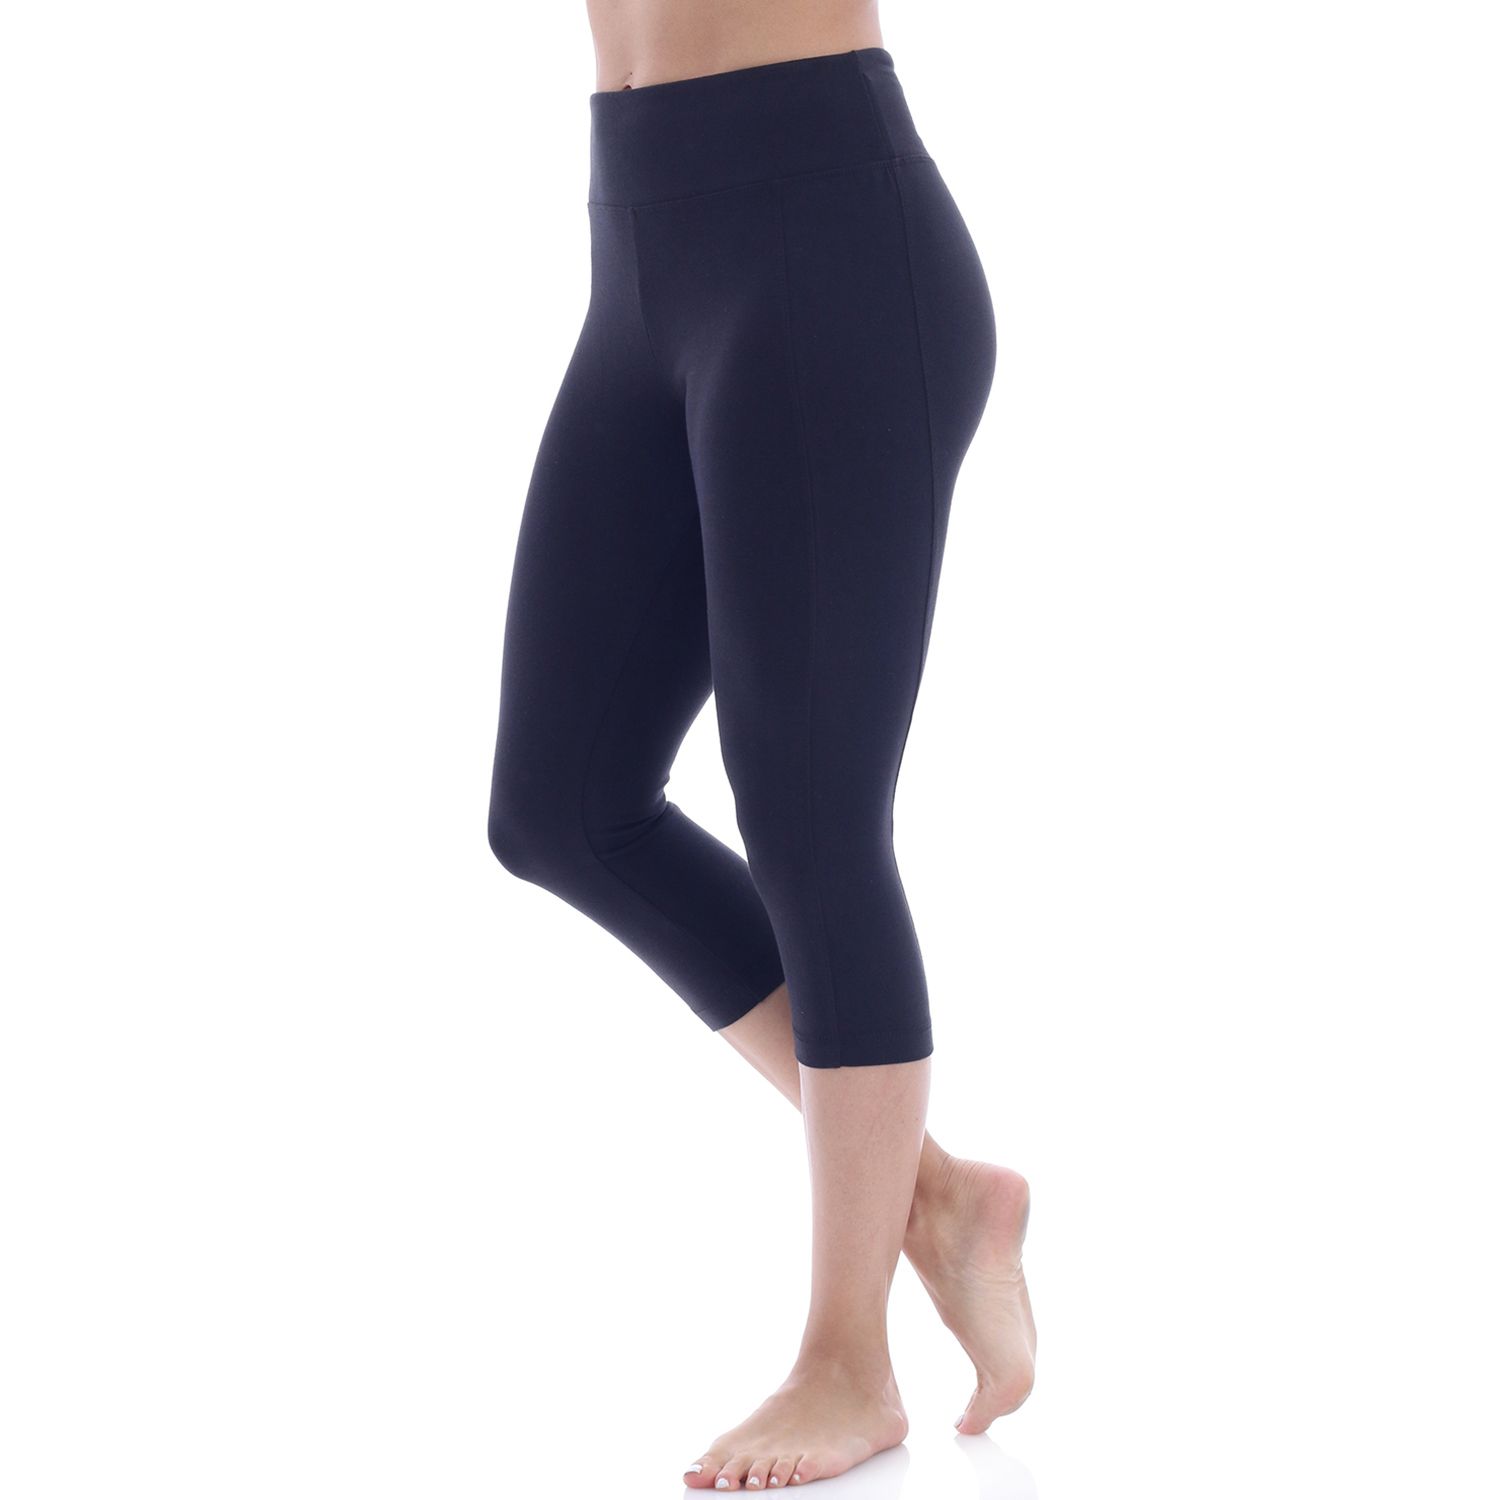 bally total fitness yoga pants